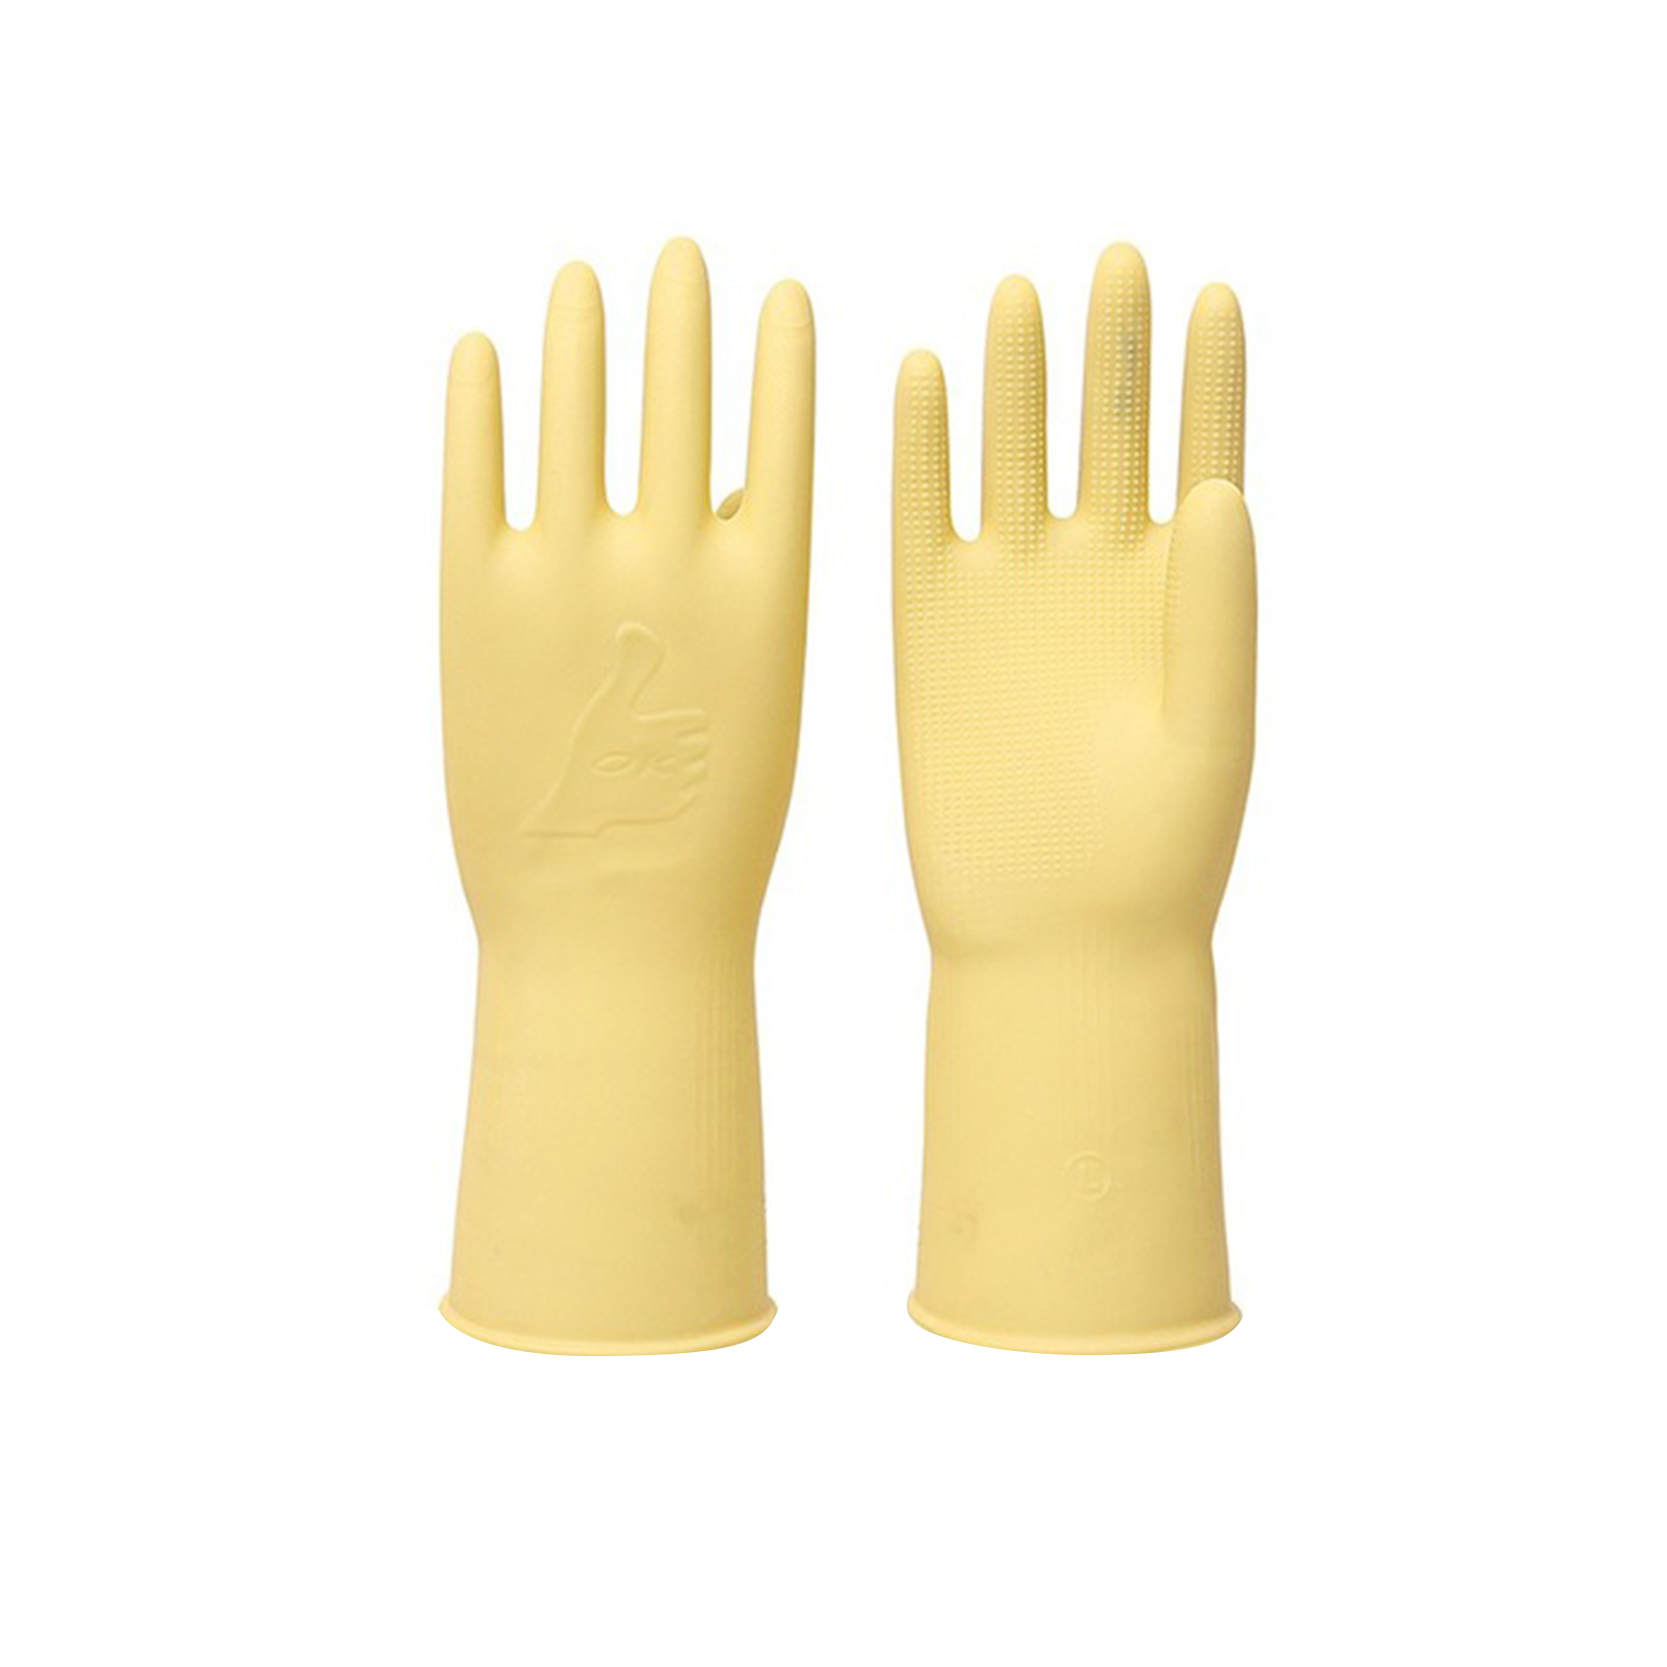 Chaw tsim tshuaj paus lag luam wholesale Reusable Latex Tsev Chav Ua Noj Waterproof Dishwashing Gloves Featured duab